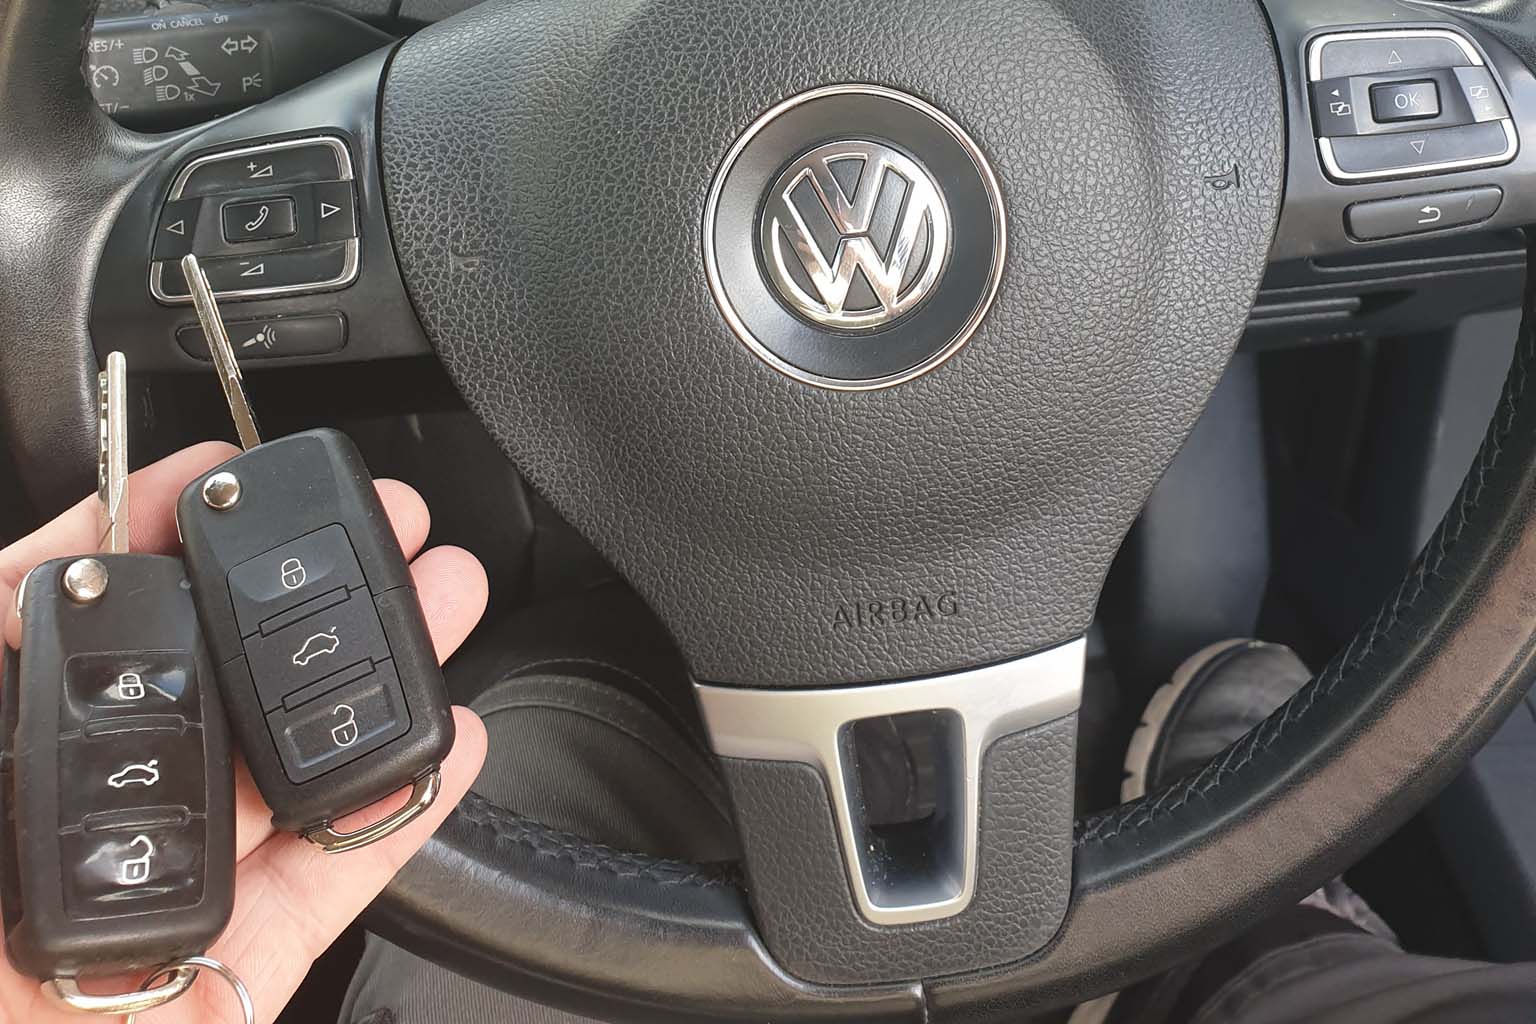 VW car key replacement